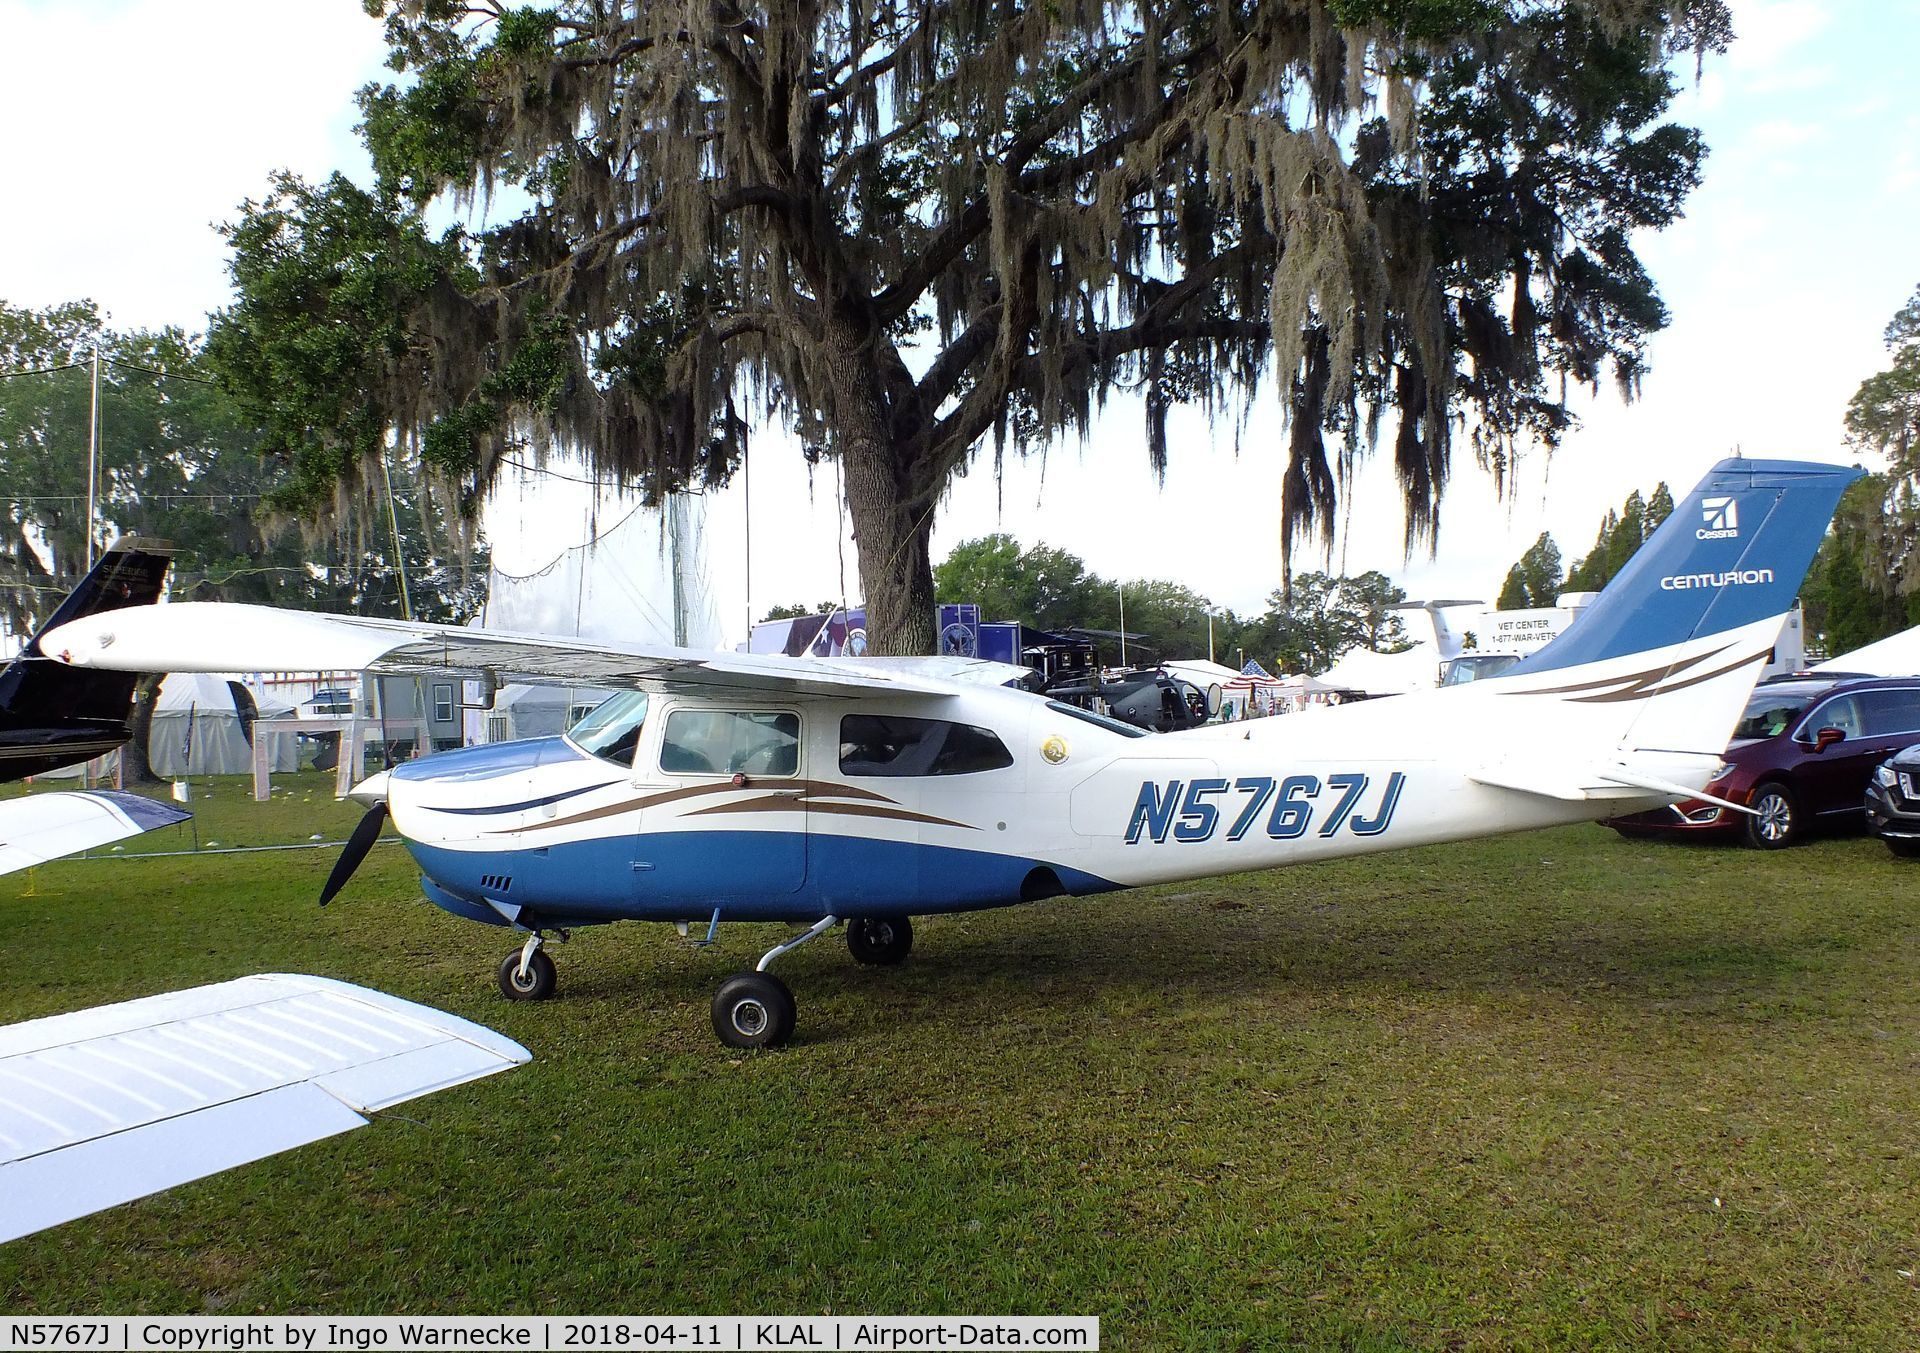 N5767J, 1971 Cessna 210K Centurion C/N 21059467, Cessna 210K Centurion at 2018 Sun 'n Fun, Lakeland FL